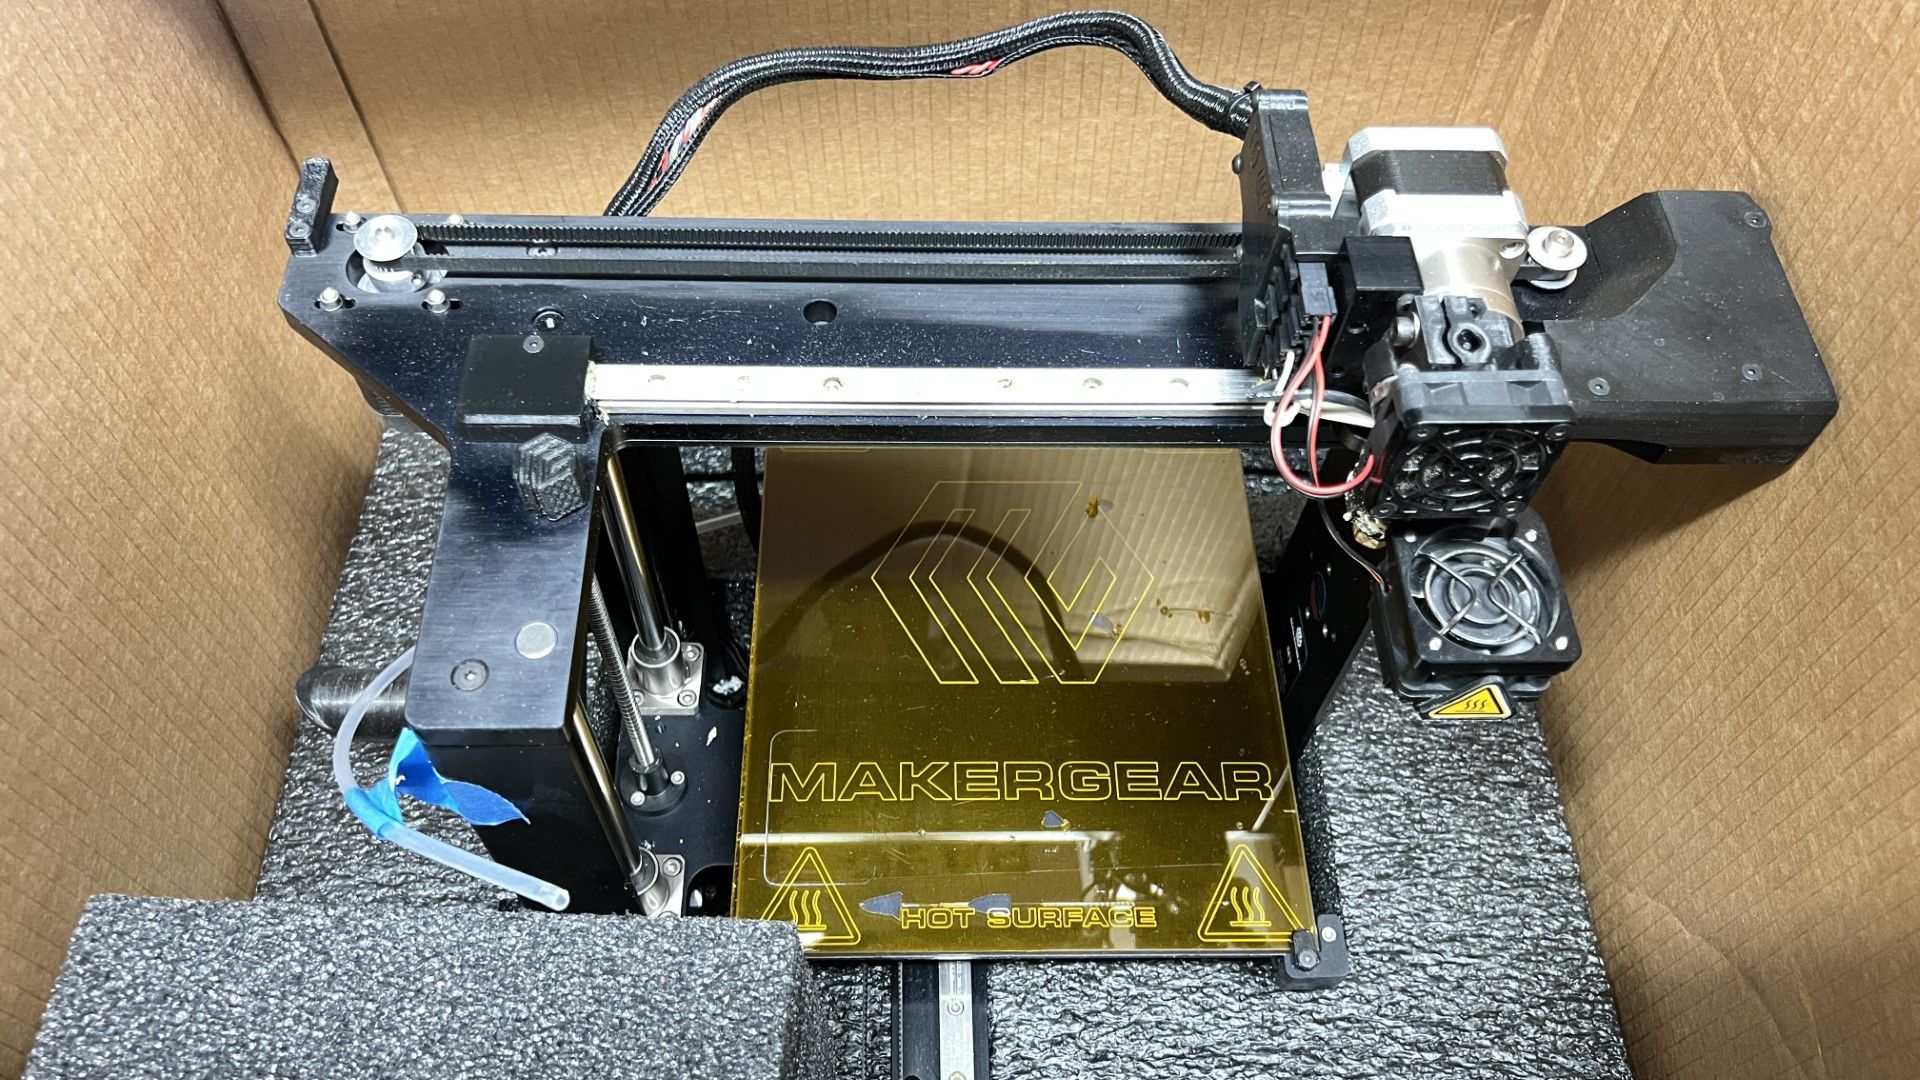 Prototype 3D Printer - Image 3 of 9